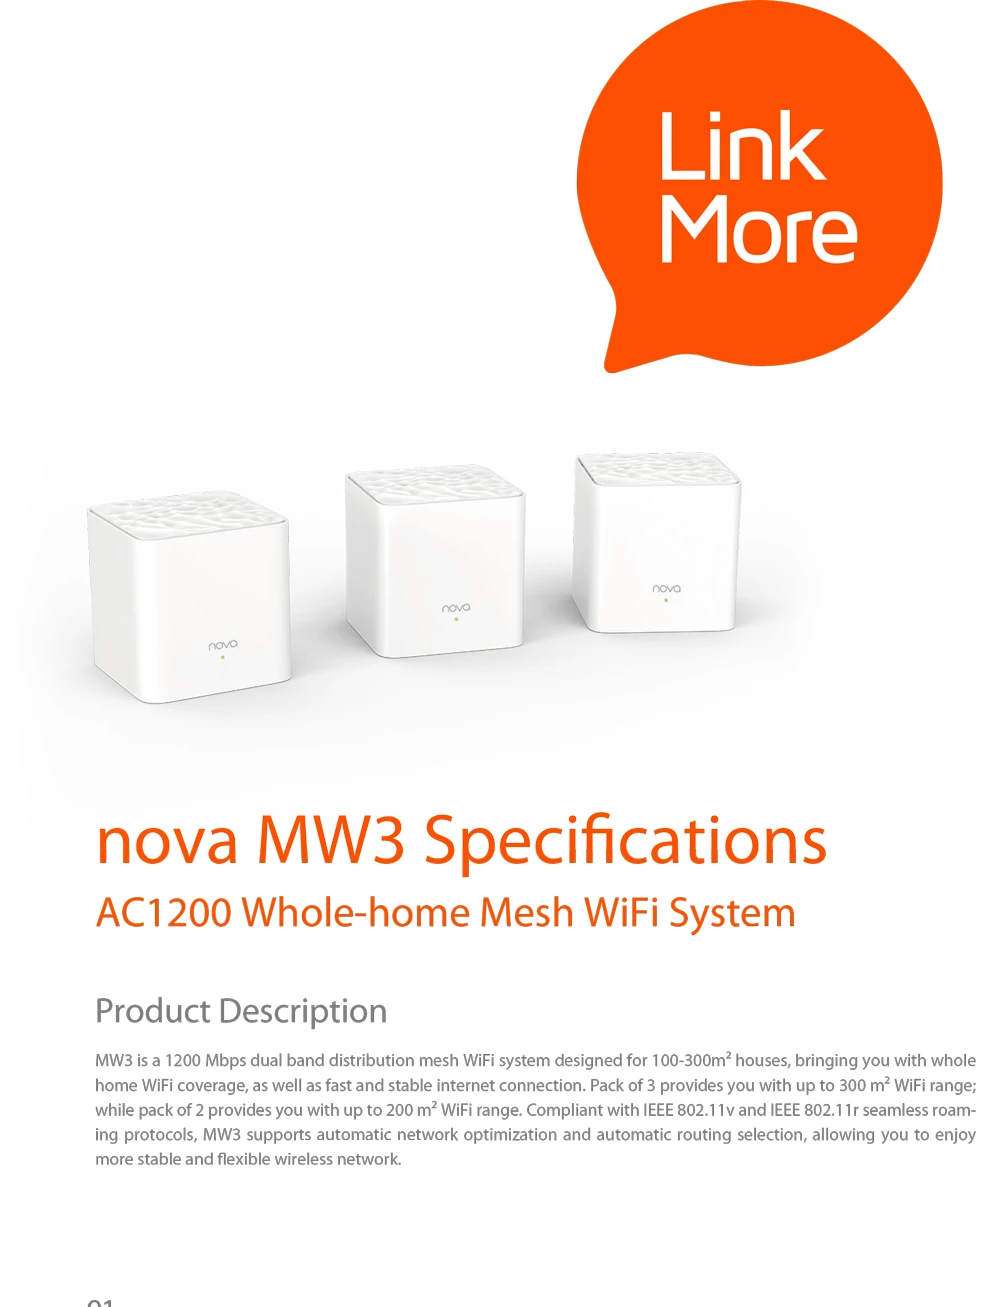 Tenda Nova MW3 полностью Домашняя сеть WiFi гигабитная система с AC1200 2,4G/5,0 GHz WiFi беспроводной маршрутизатор и повторитель, приложение дистанционное управление